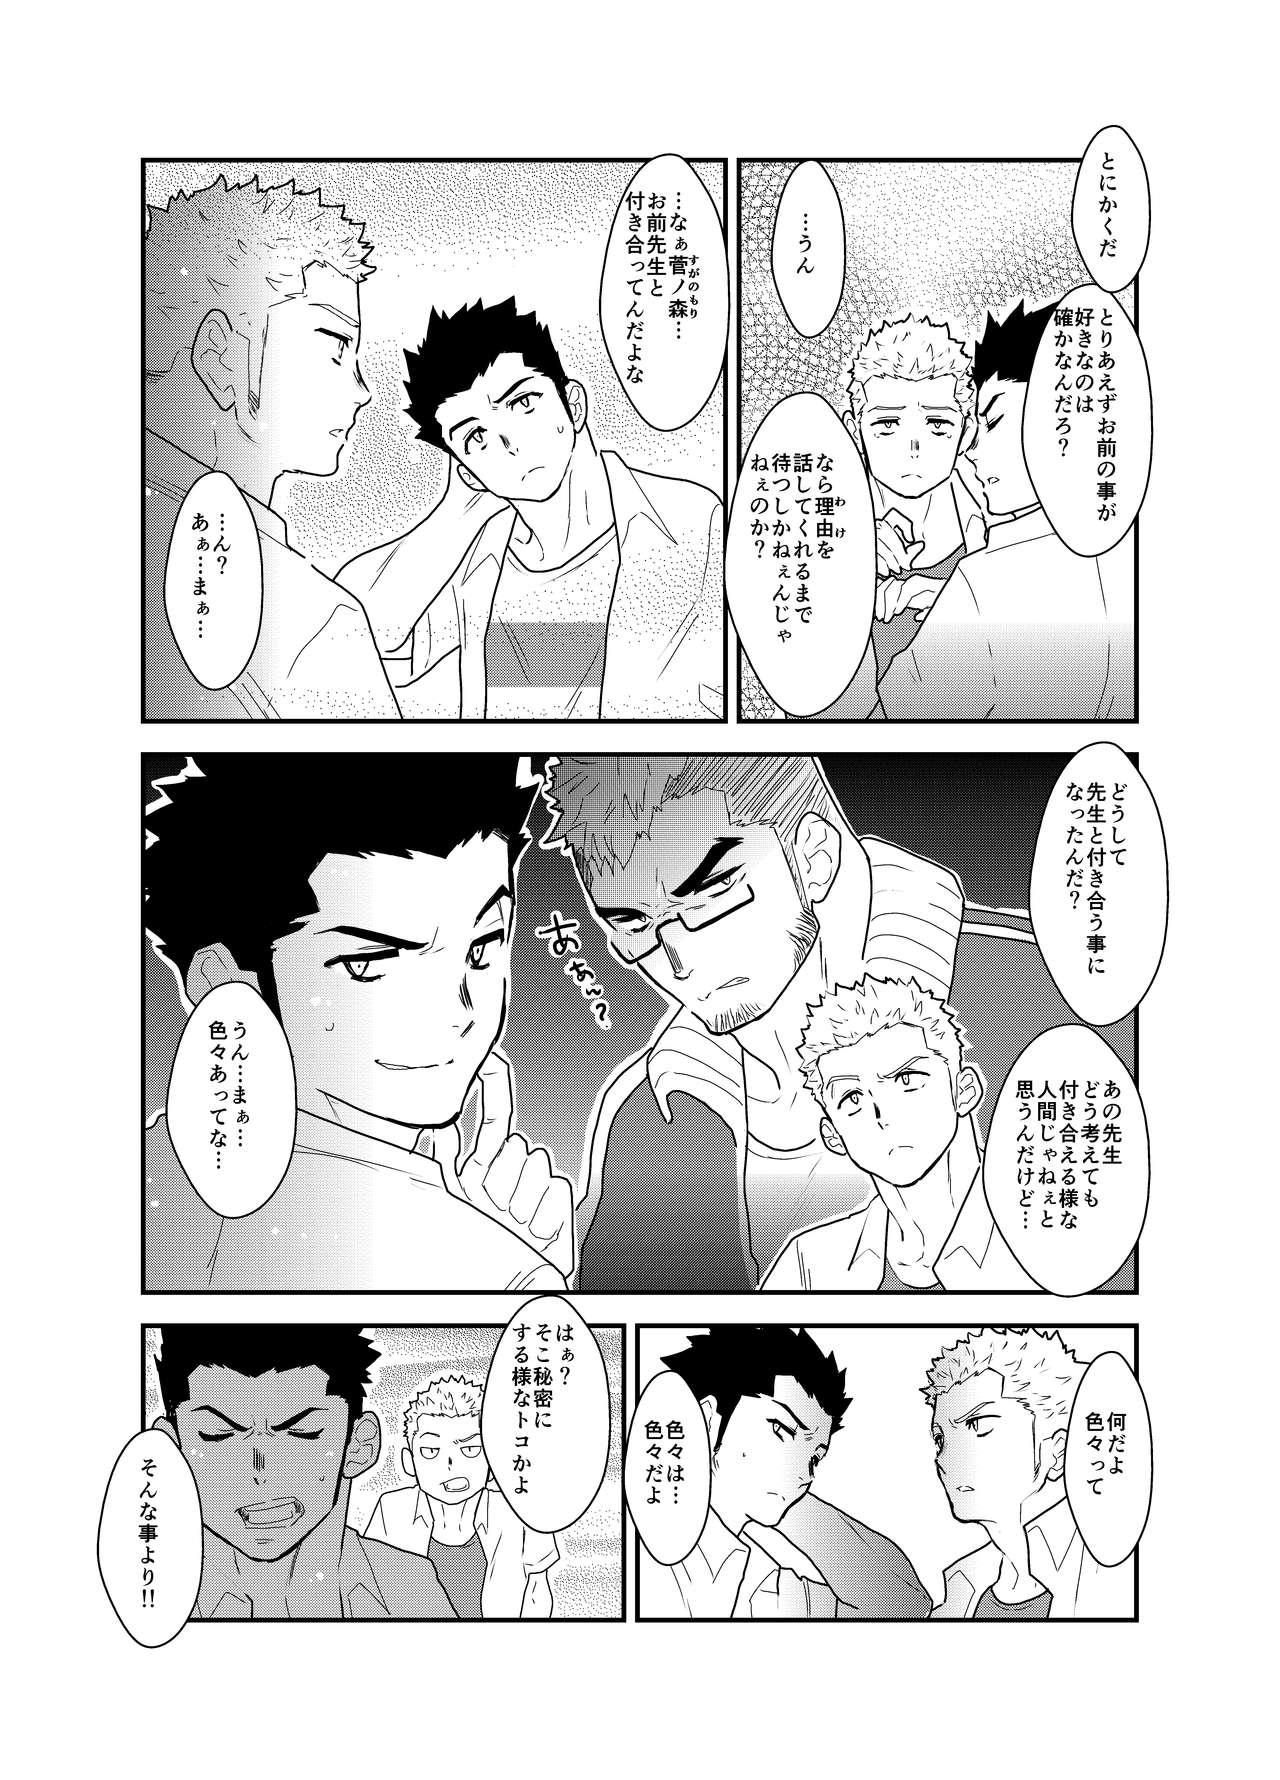 Fat Aitsu ga Ore to Tsukiaenai Riyuu ga Mattaku Wakaranai no desu ga. - Original Close - Page 6